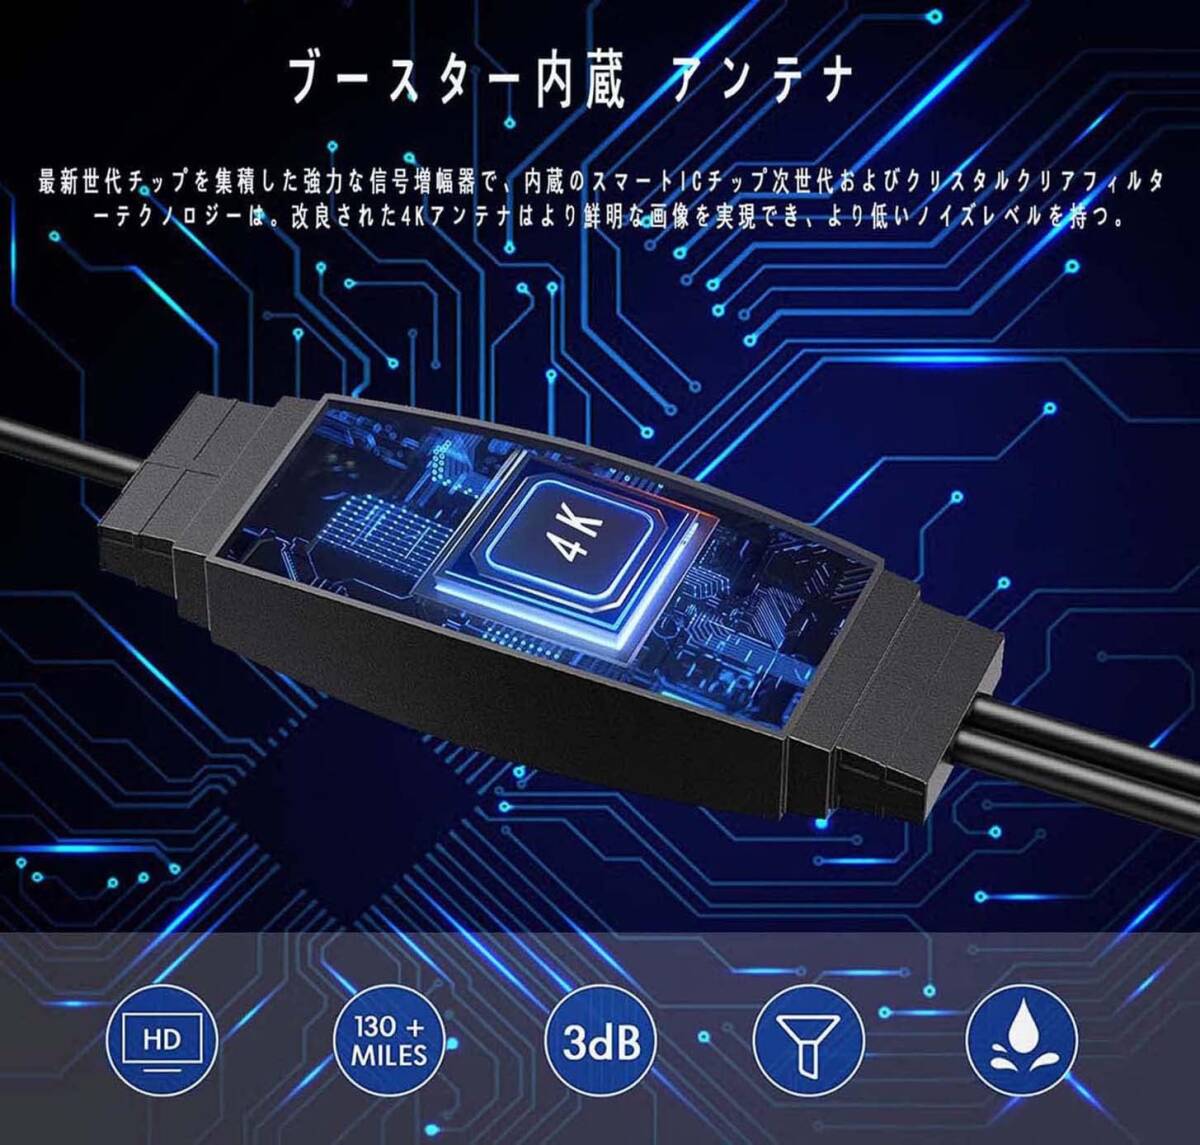 YaizK телевизор антенна салон 4K HD бесплатный просмотр 530KM прием область автомобильный высокочувствительный USB тип простой подключение . сила японский язык инструкция по эксплуатации 